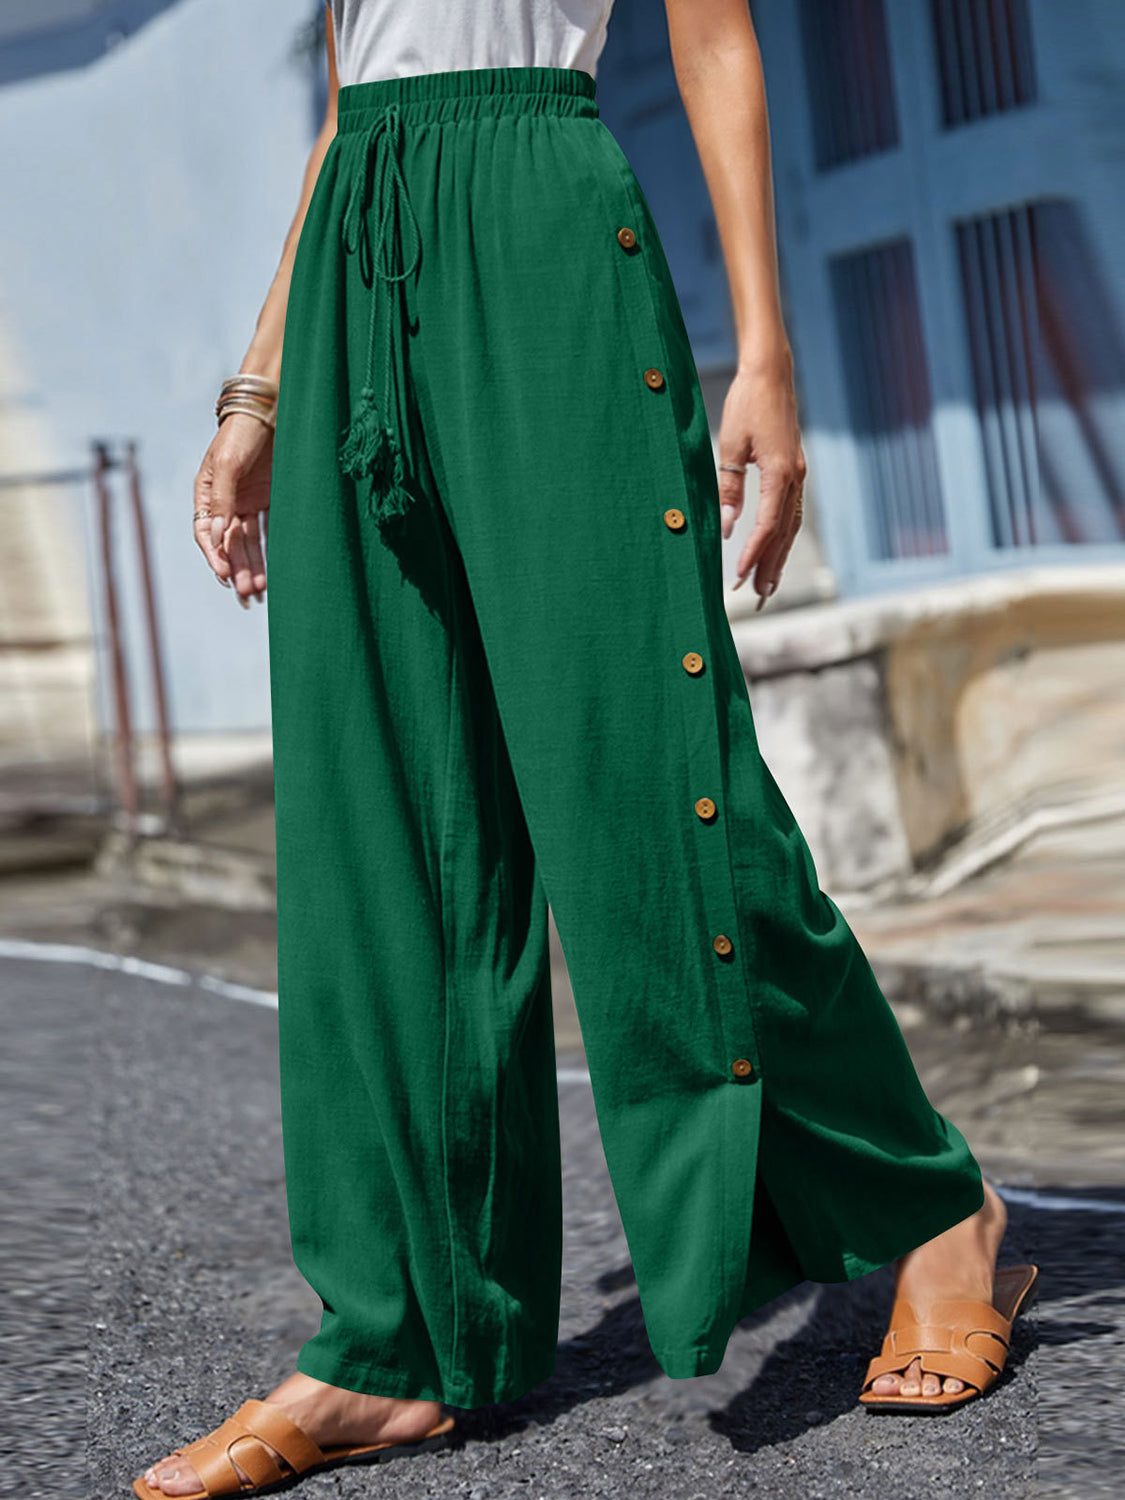 TEEK - Full Size Tassel Wide Leg Pants PANTS TEEK Trend Green S 